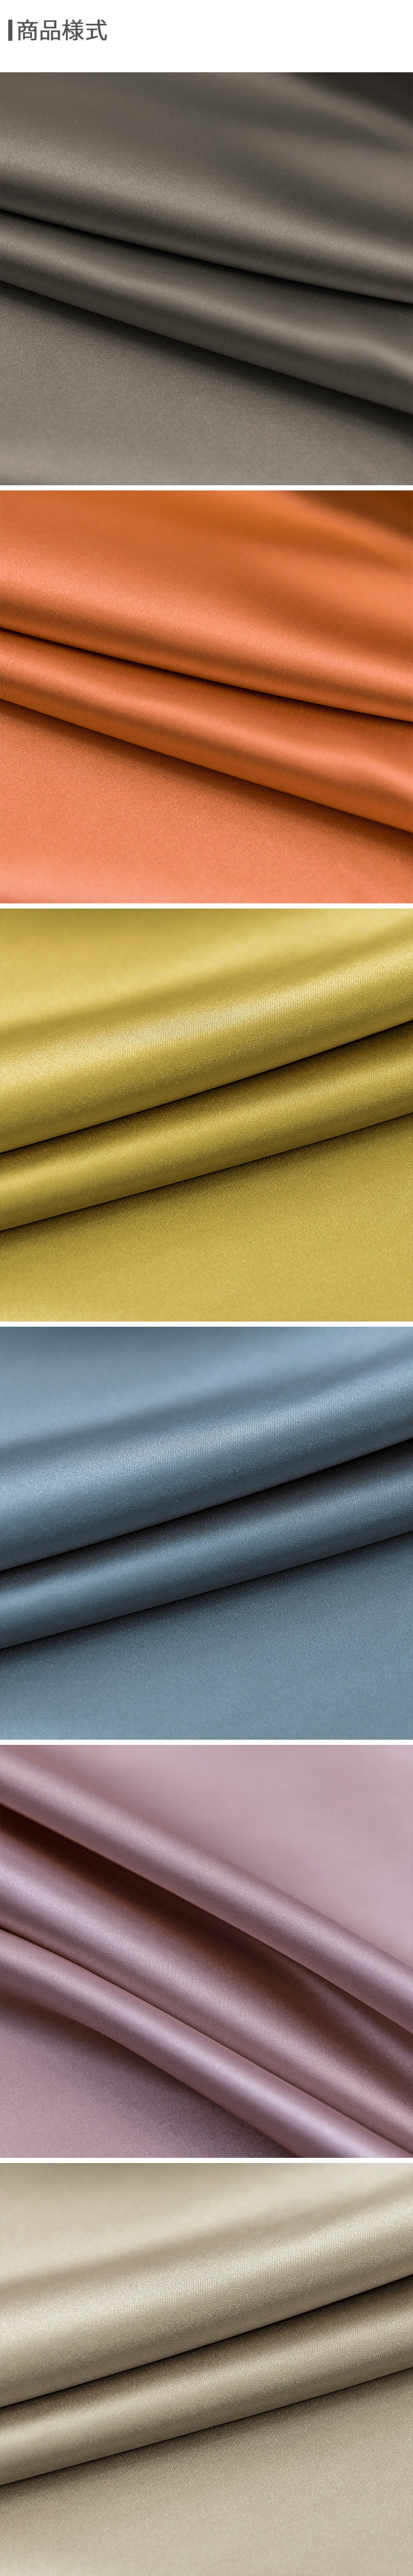 【ドレープカーテン】シルク質感生地 エレガント 選べる23色 カーテンの細部画像